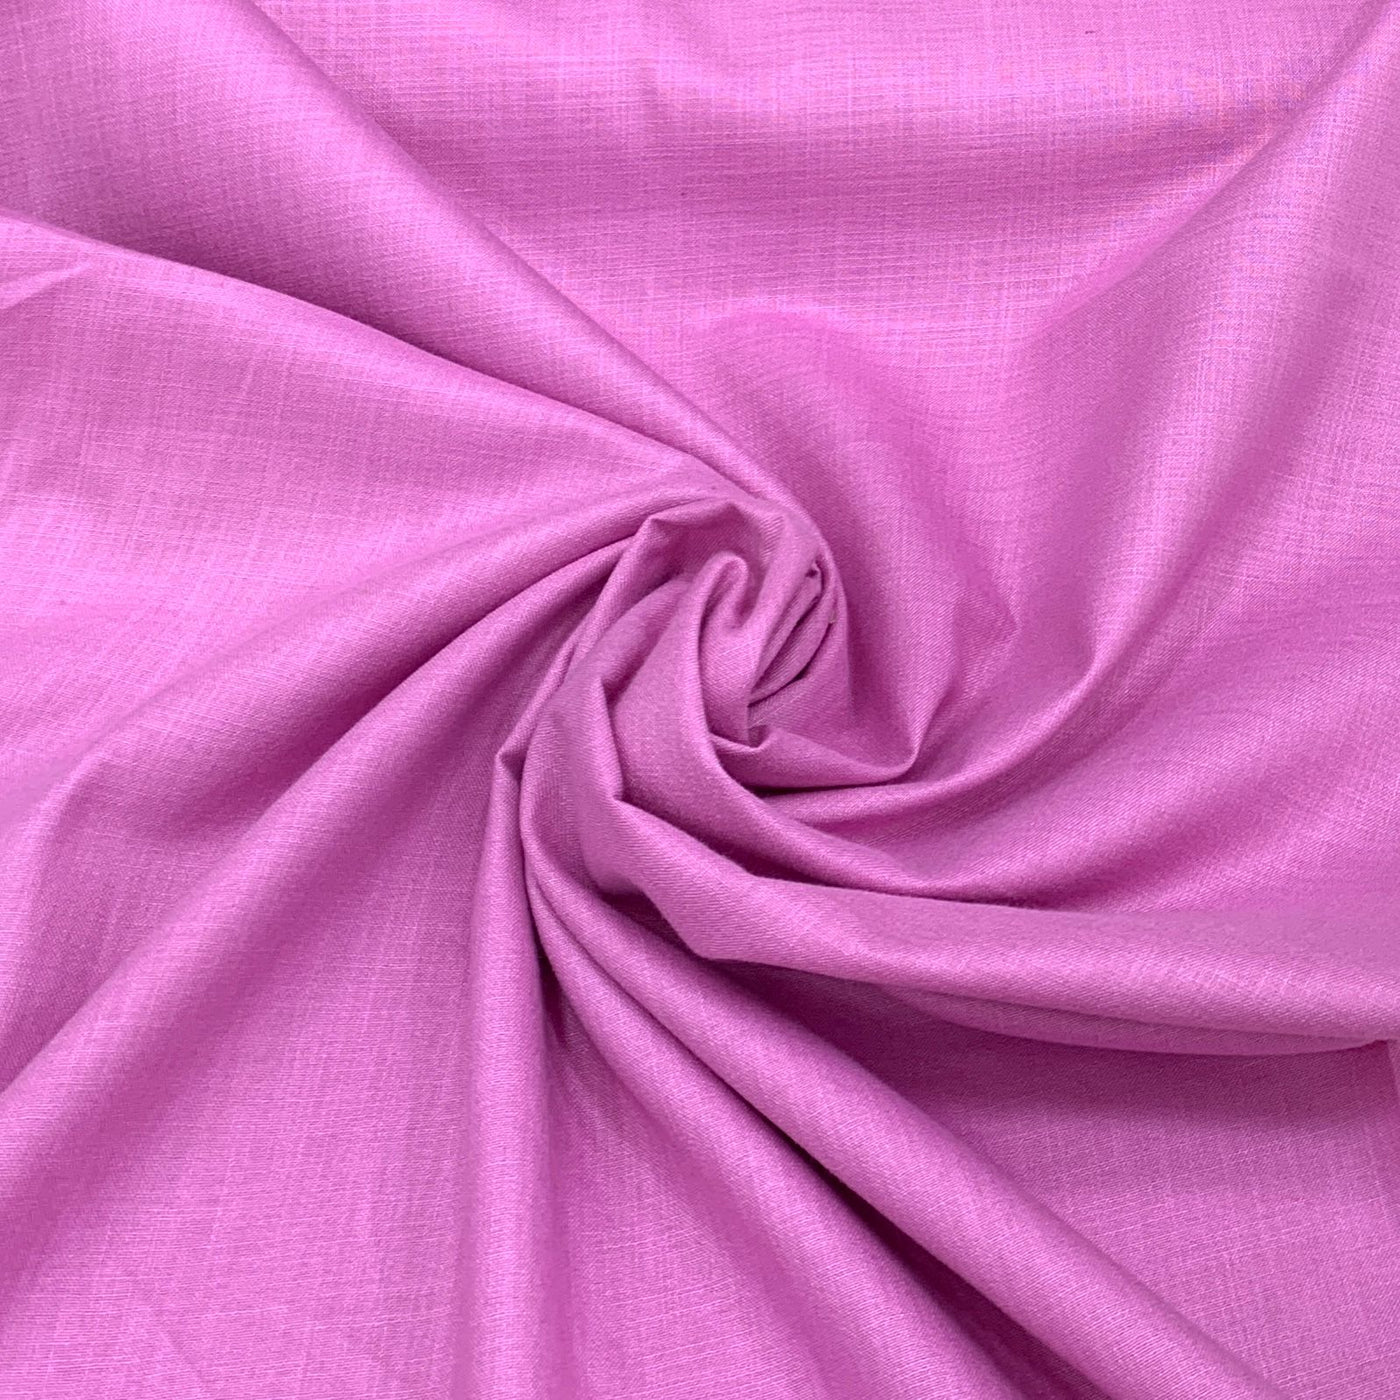 Onion Pink Plain Cotton Matka Fabric